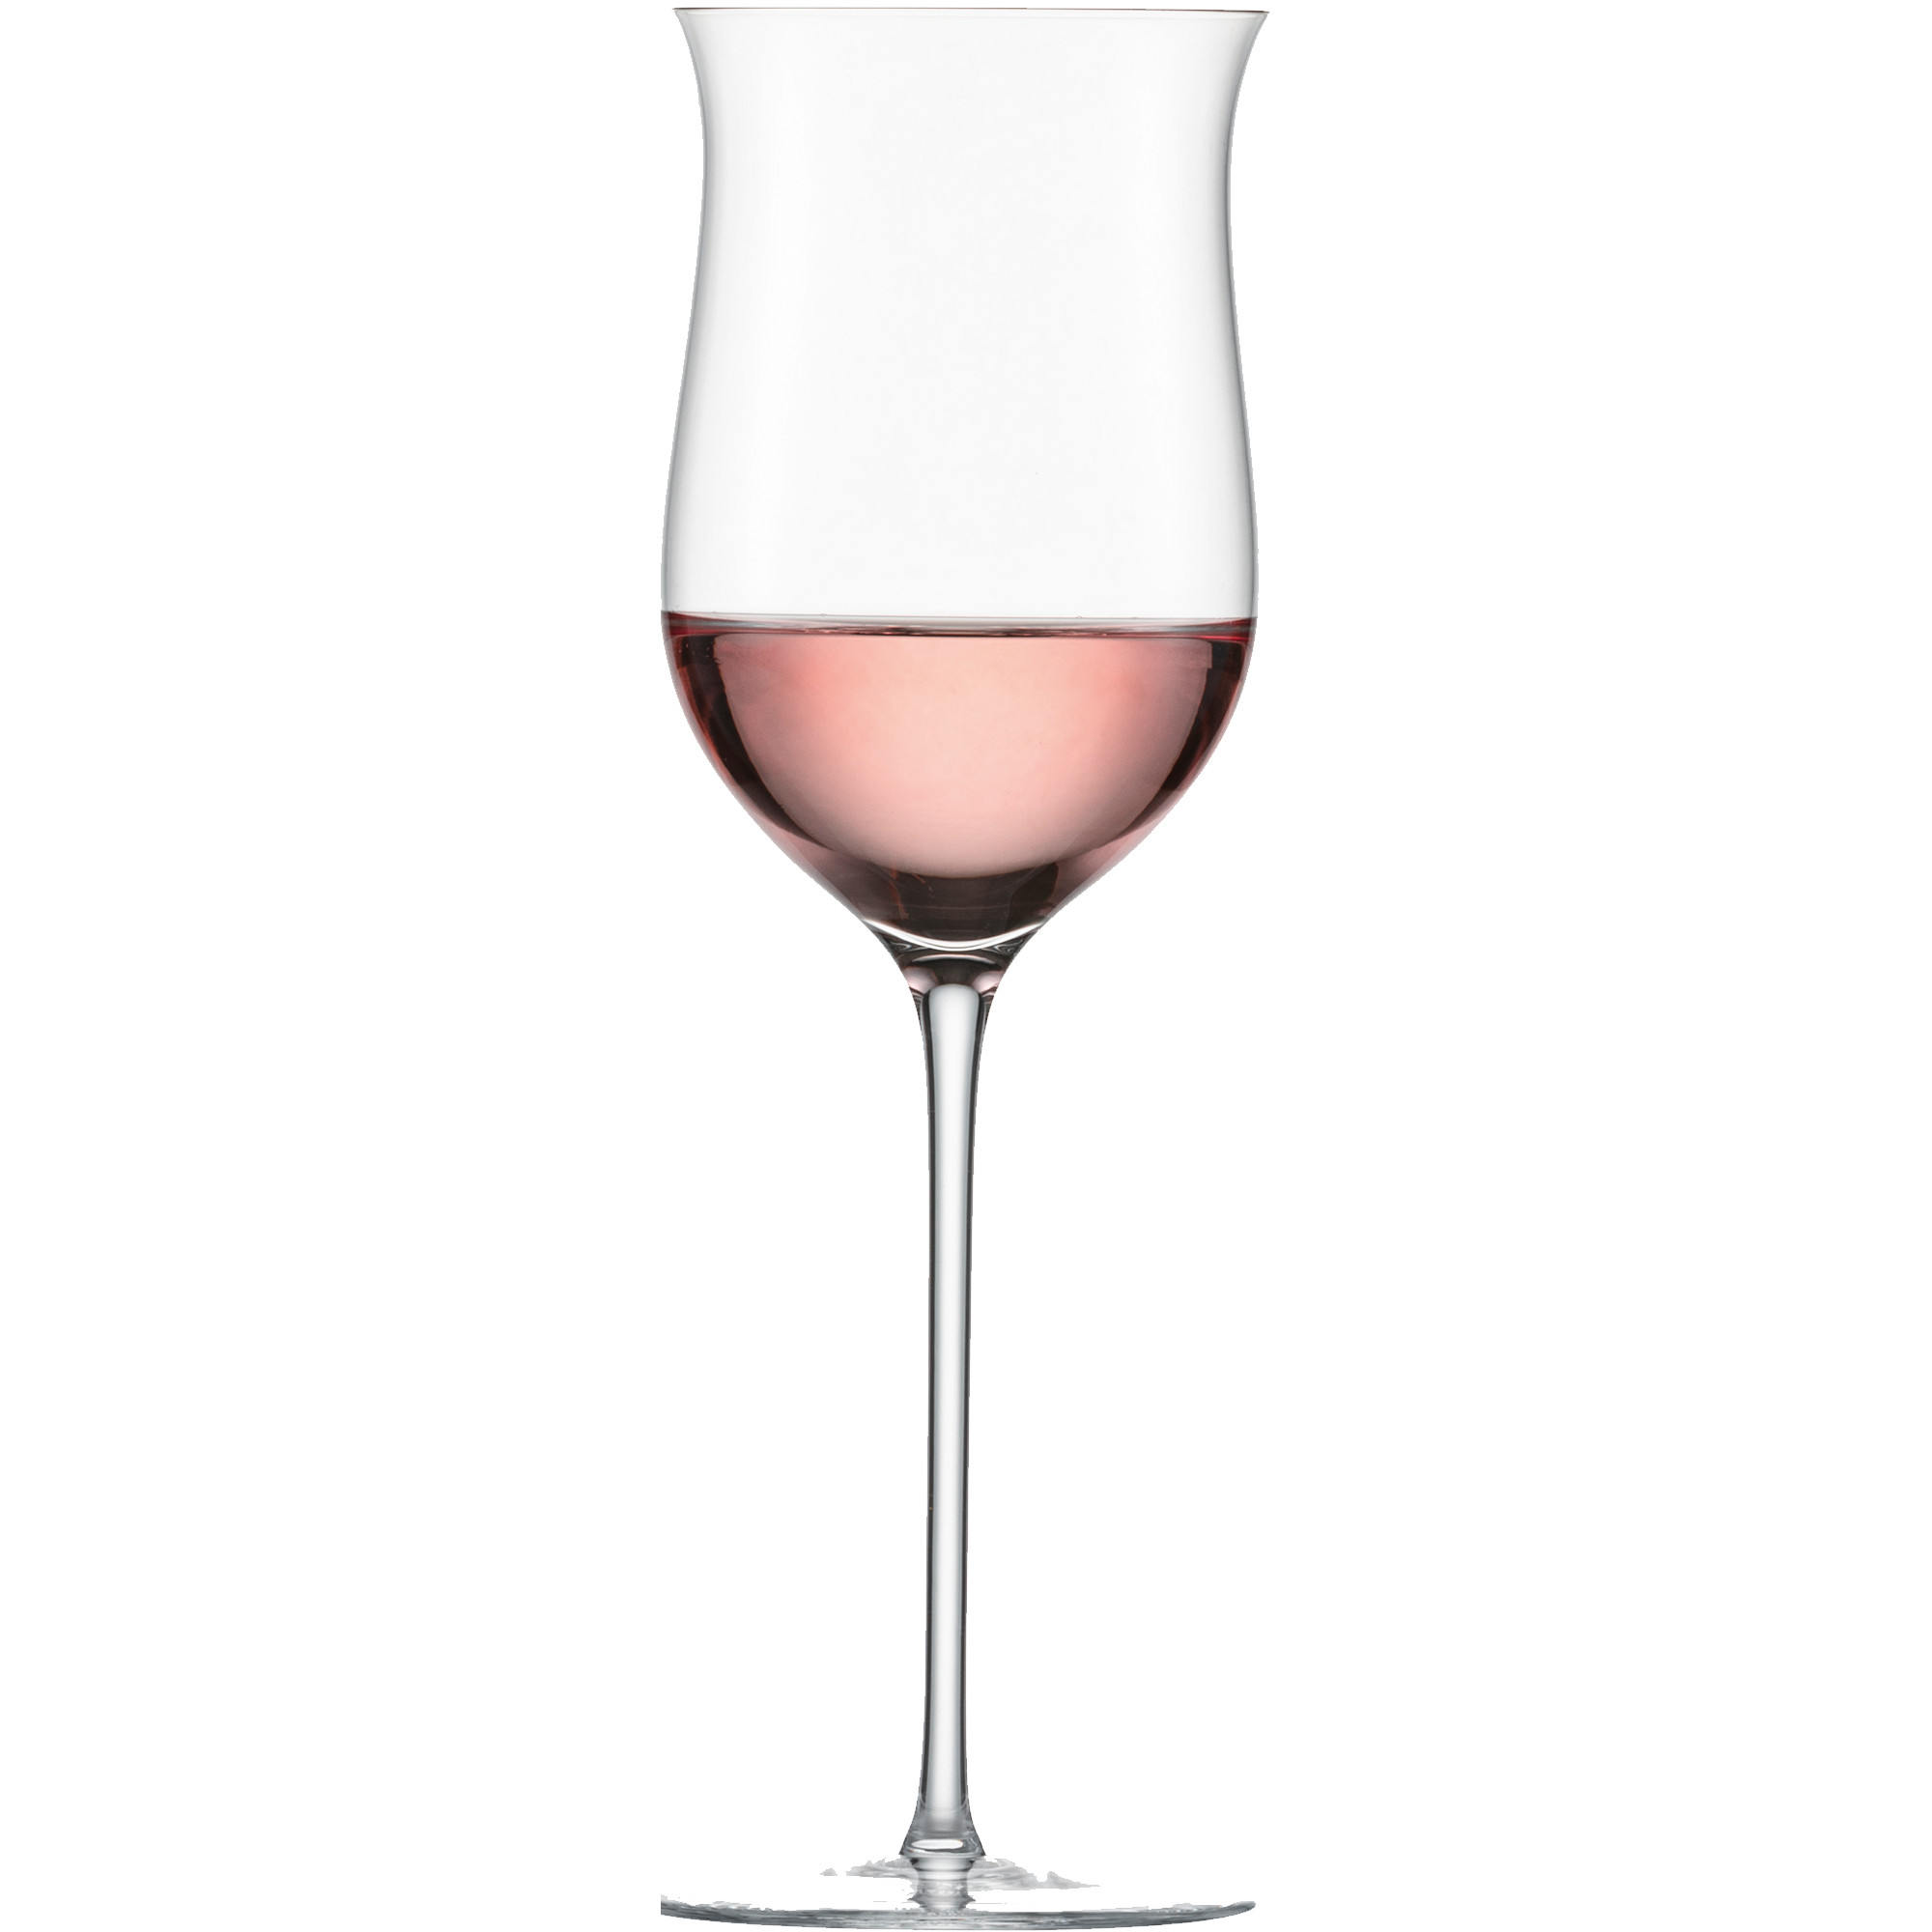 Bei einem Glas für Rosé handelt es sich um ein Glas mit einem schmalen Durchmesser, das jedoch etwas bauchiger als ein Weißweinglas ist und dessen Glasrand sich ein kleines Stück nach außen wölbt. Diese Glasform sorgt zum einen dafür, dass sich die Aromen des Weins konzentrieren. Zum anderen wird der Wein beim Trinken auf die Zungenspitze gelenkt. So wird der Eindruck von Frucht verstärkt und harmoniert gleichzeitig mit der Säure.&nbsp;&nbsp;